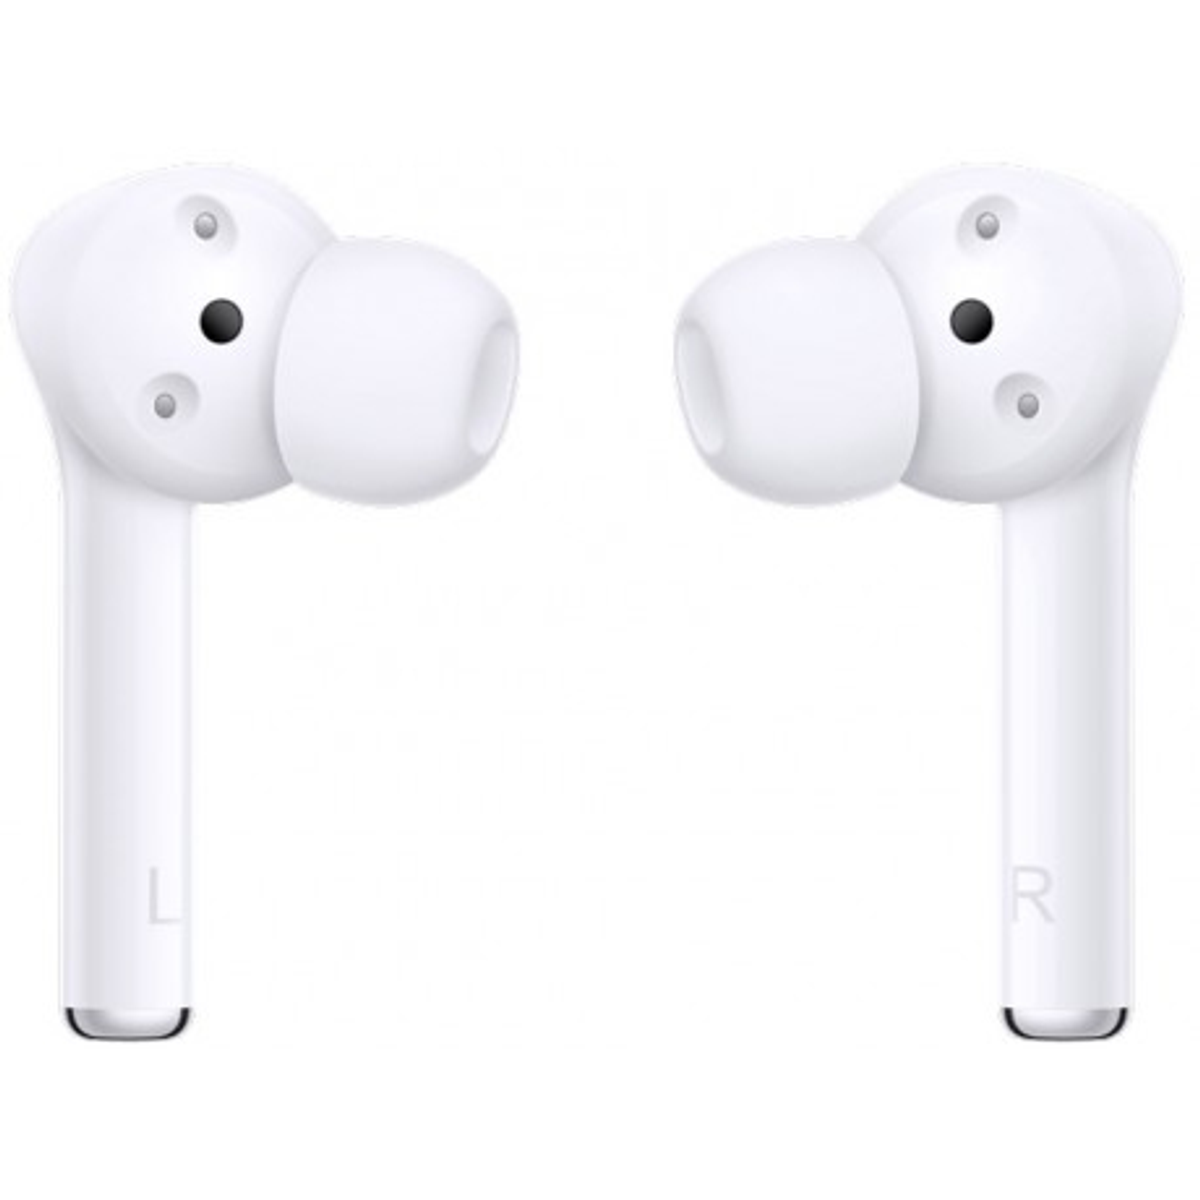 HUAWEI Freebuds Kopfhörer weiß 3i, In-ear Bluetooth